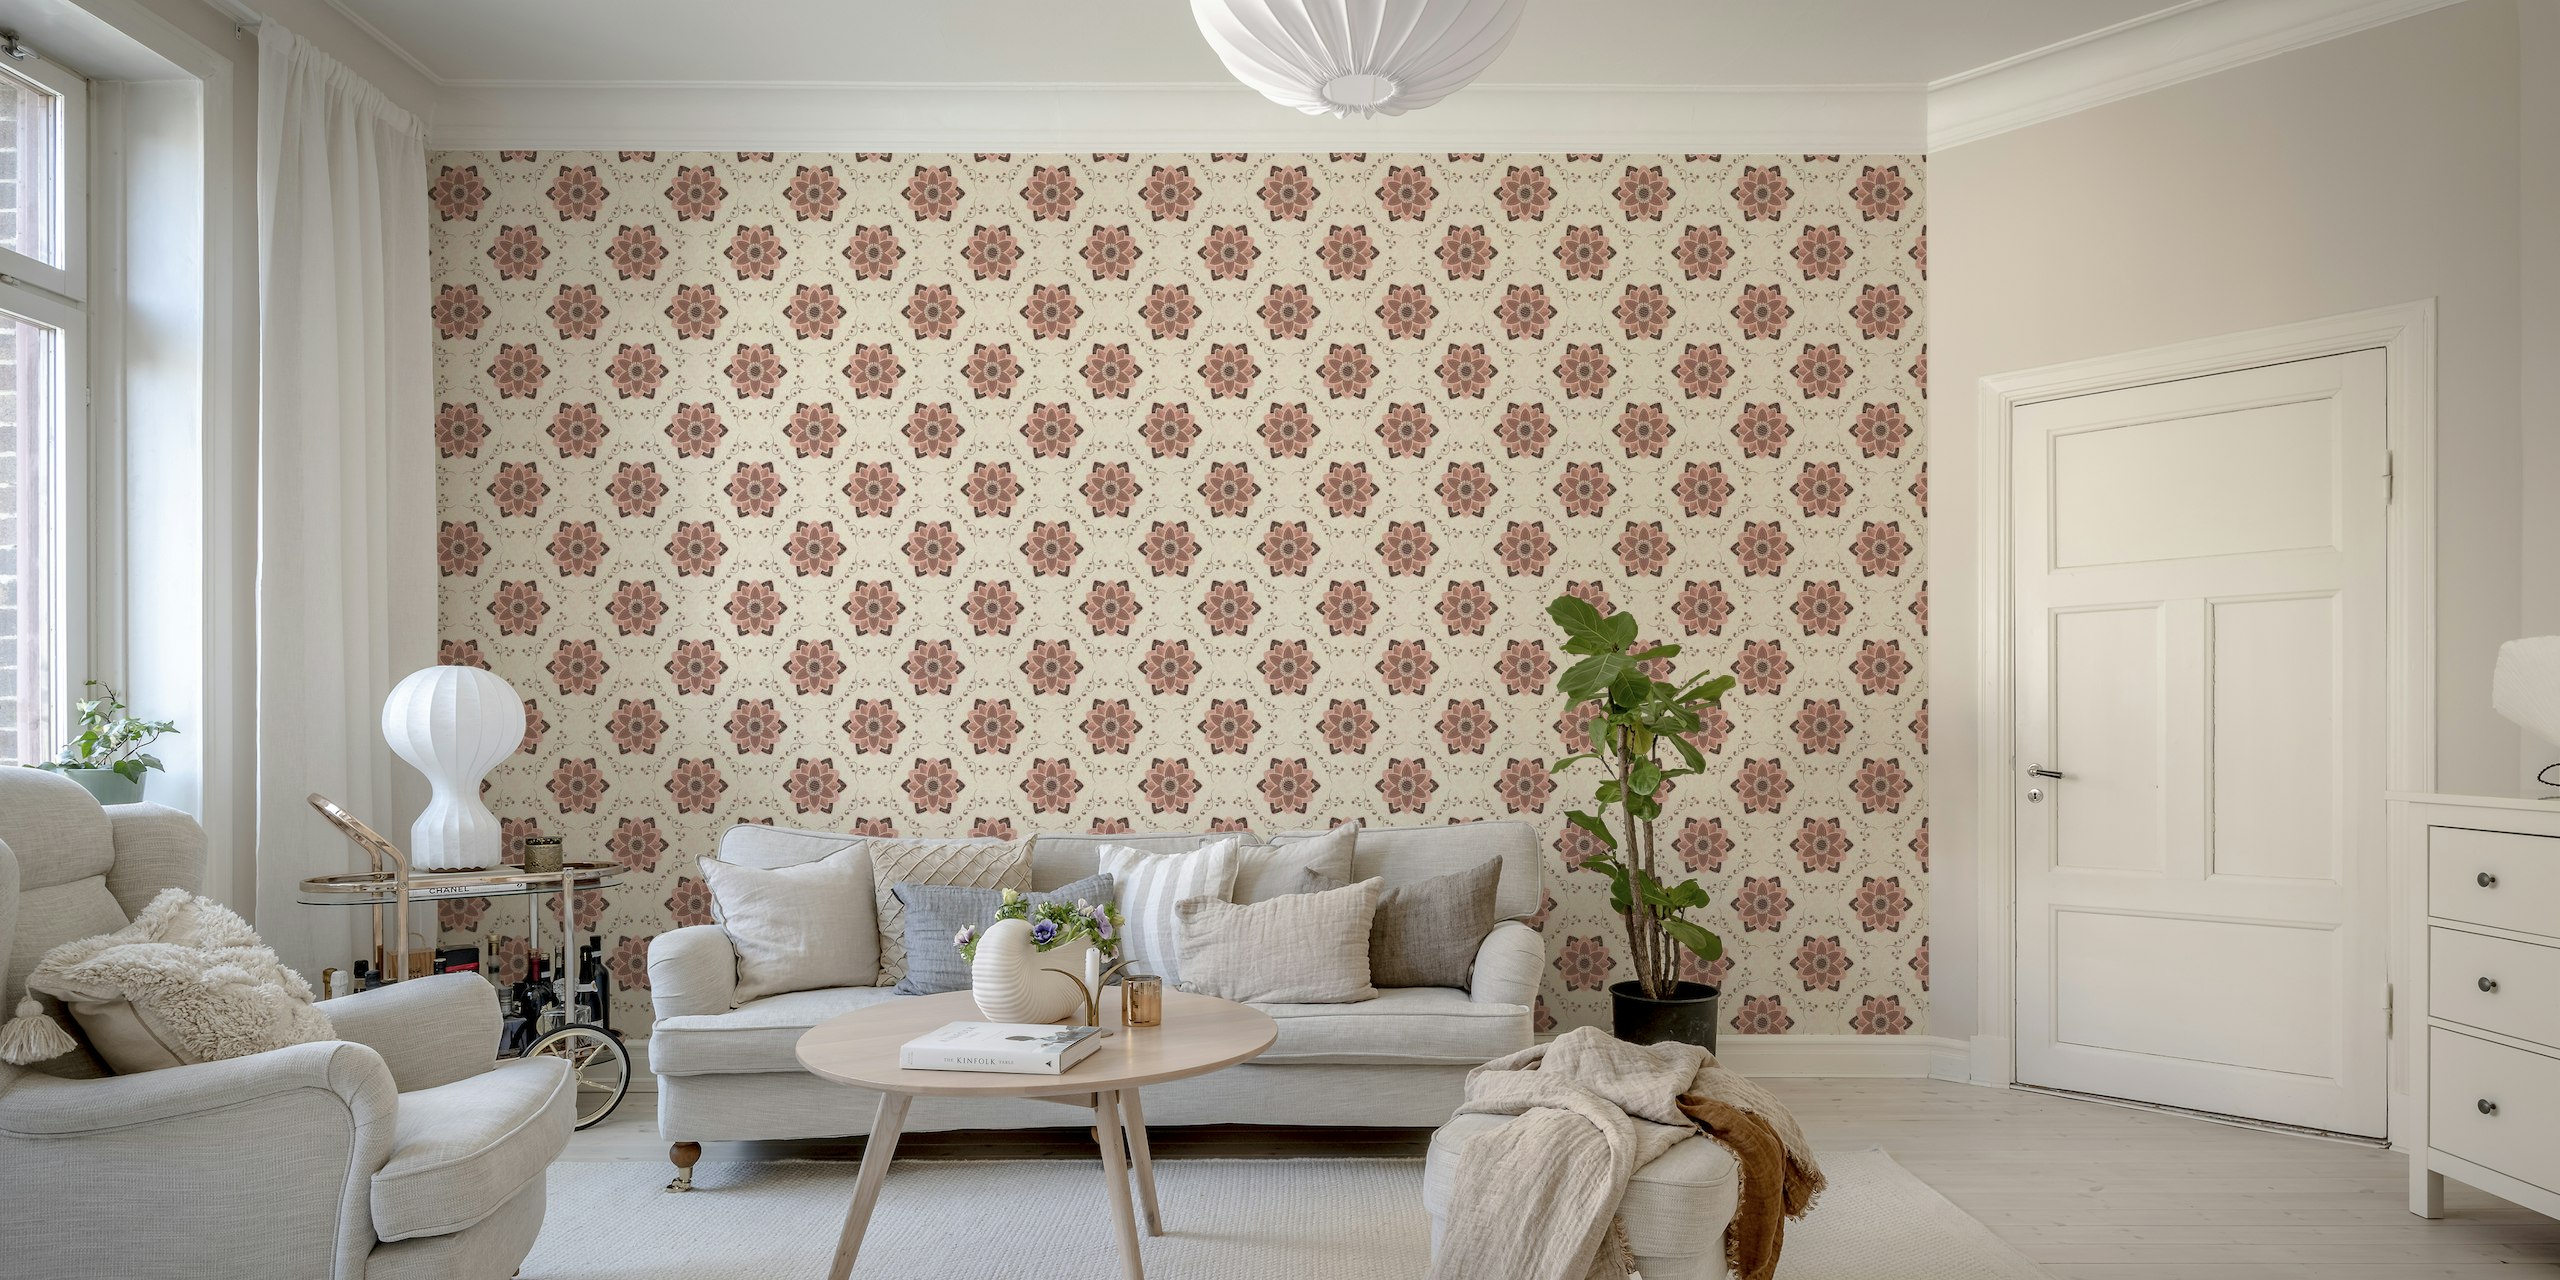 Waterlilies in decorative pattern wallpaper